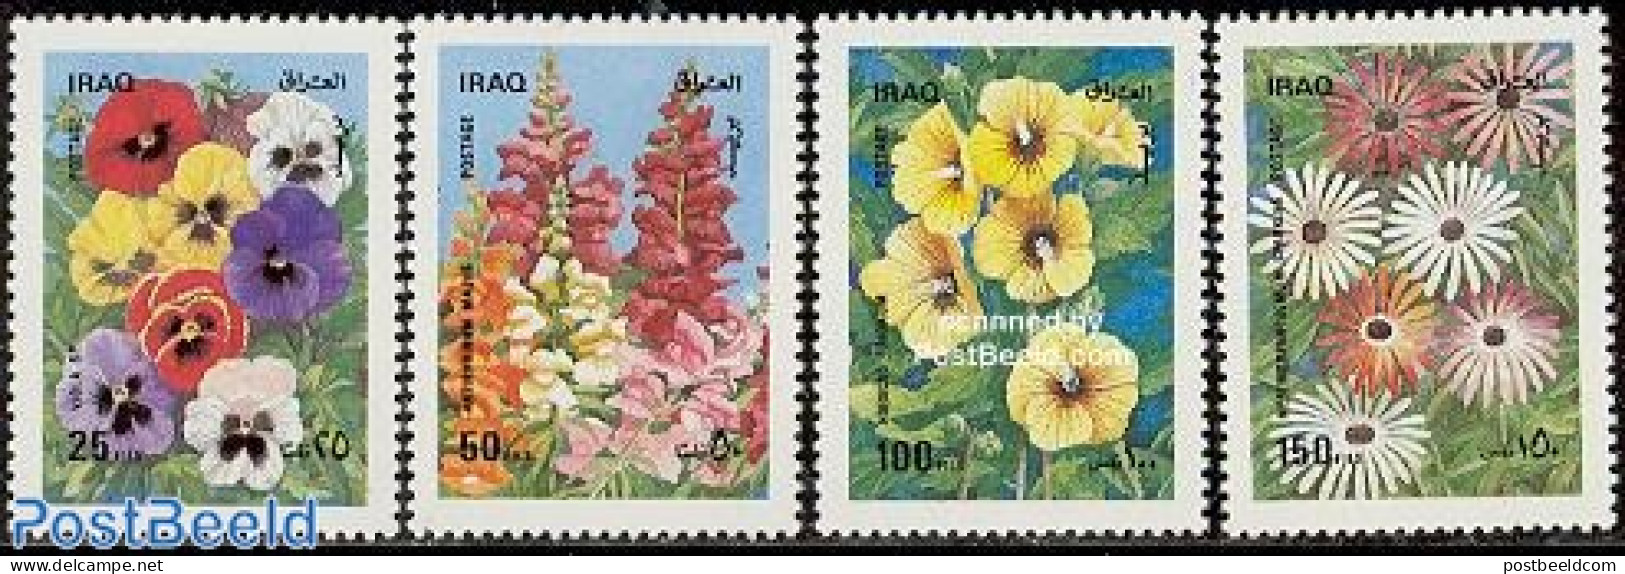 Iraq 1989 Flowers 4v, Mint NH, Nature - Flowers & Plants - Iraq